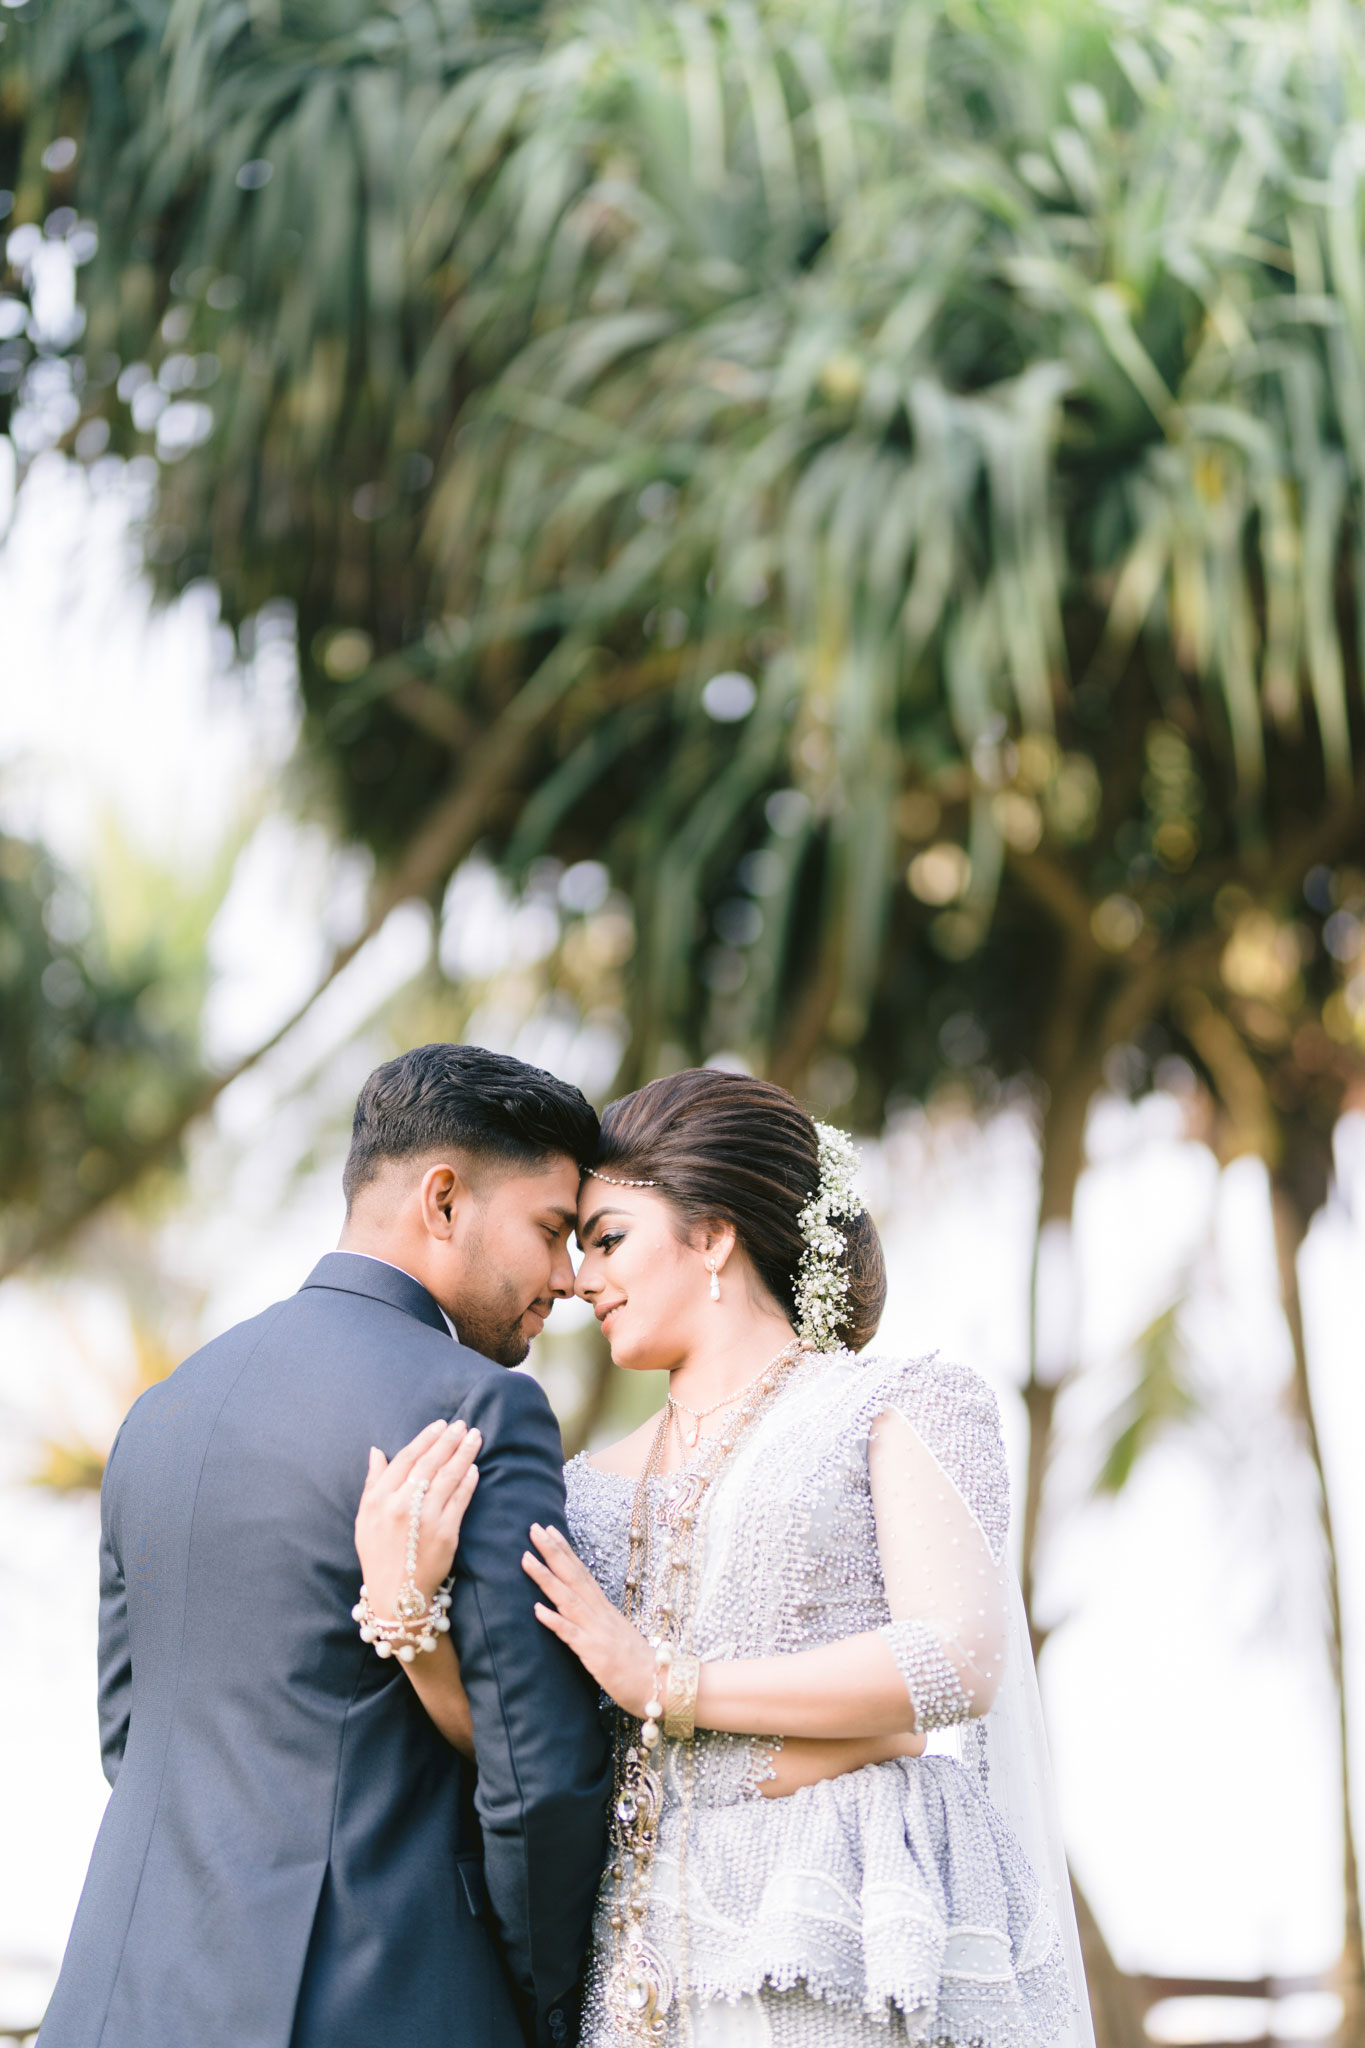 Dilusha & Udara - Prabath Kanishka Wedding Photography